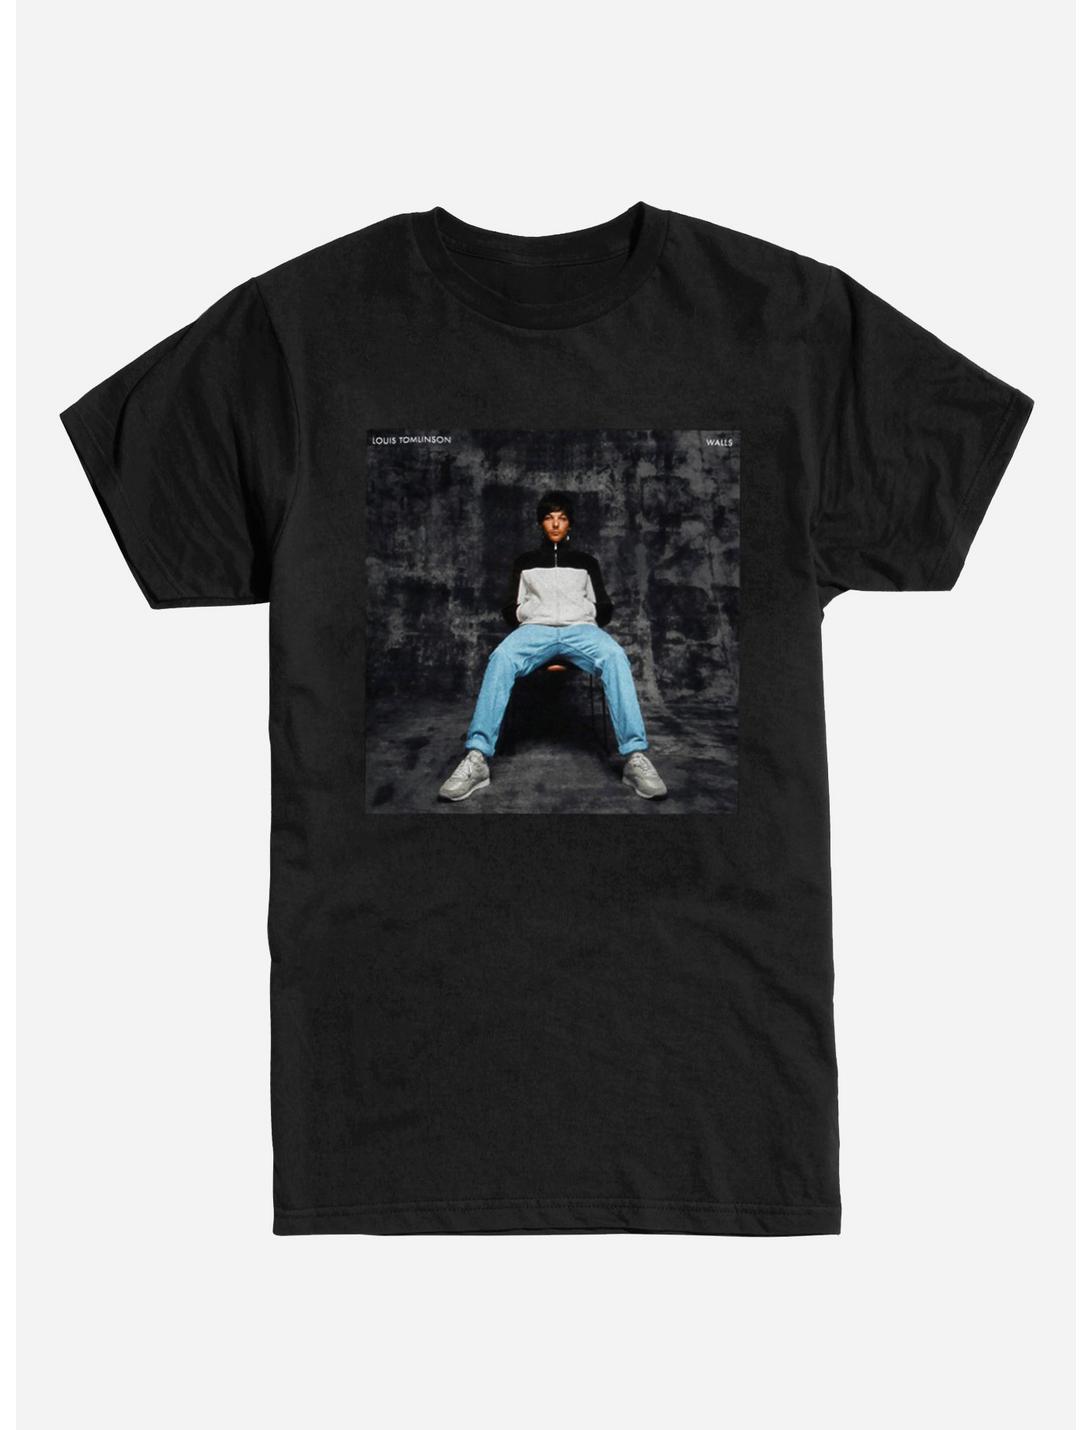 Louis Tomlinson Walls T-Shirt, BLACK, hi-res